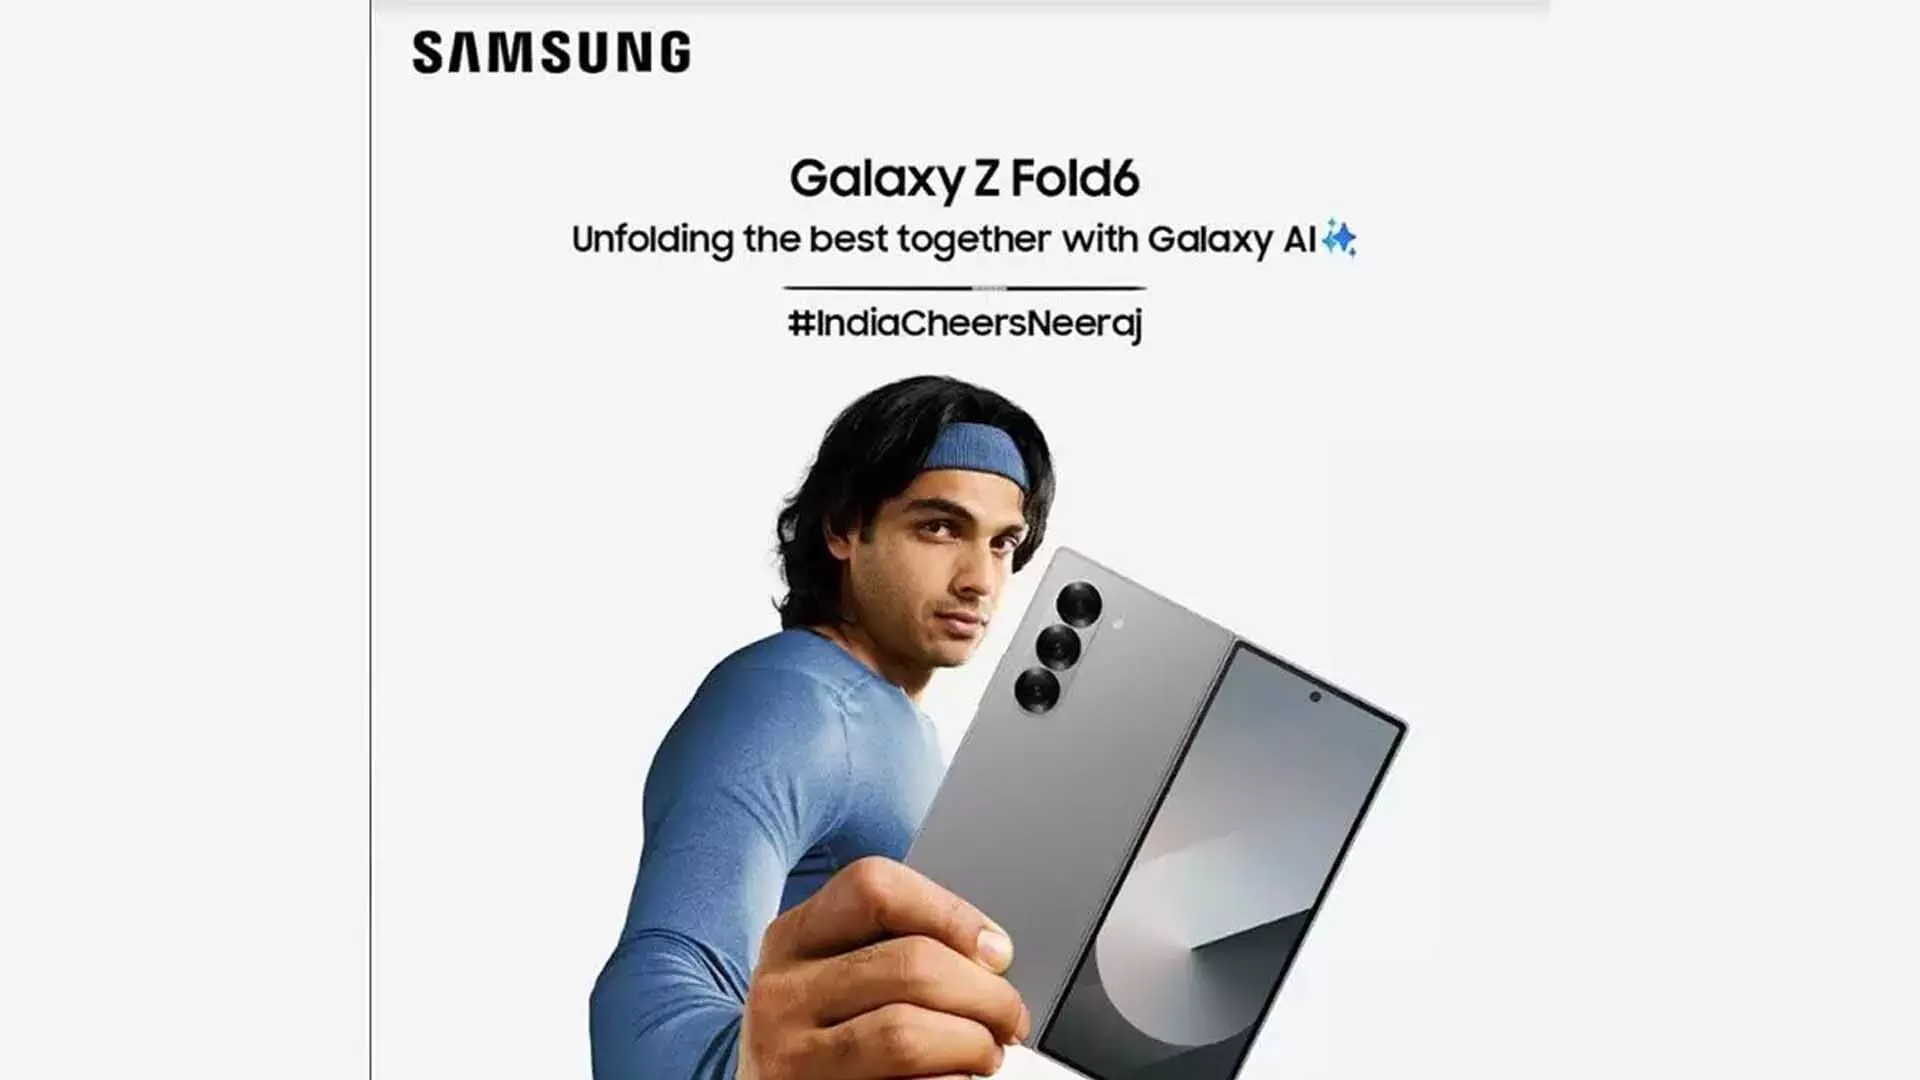 Samsung ने ‘इंडिया चीयर्स फॉर नीरज’ अभियान की घोषणा की